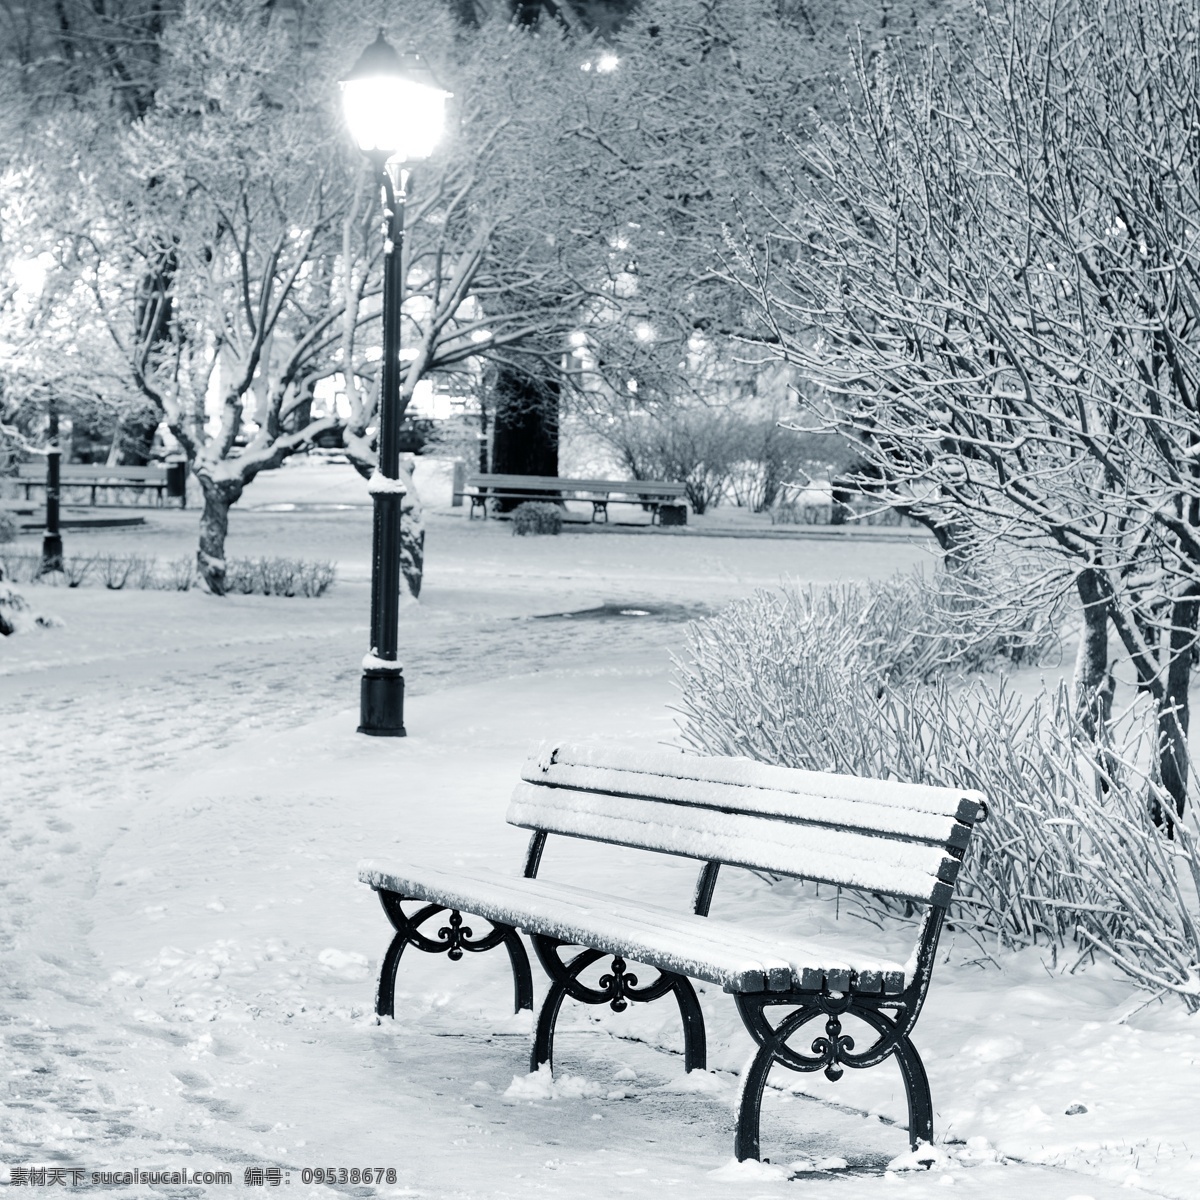 雪地 上 长椅 椅子 树木 路灯 雪景 冬景 山水风景 风景图片